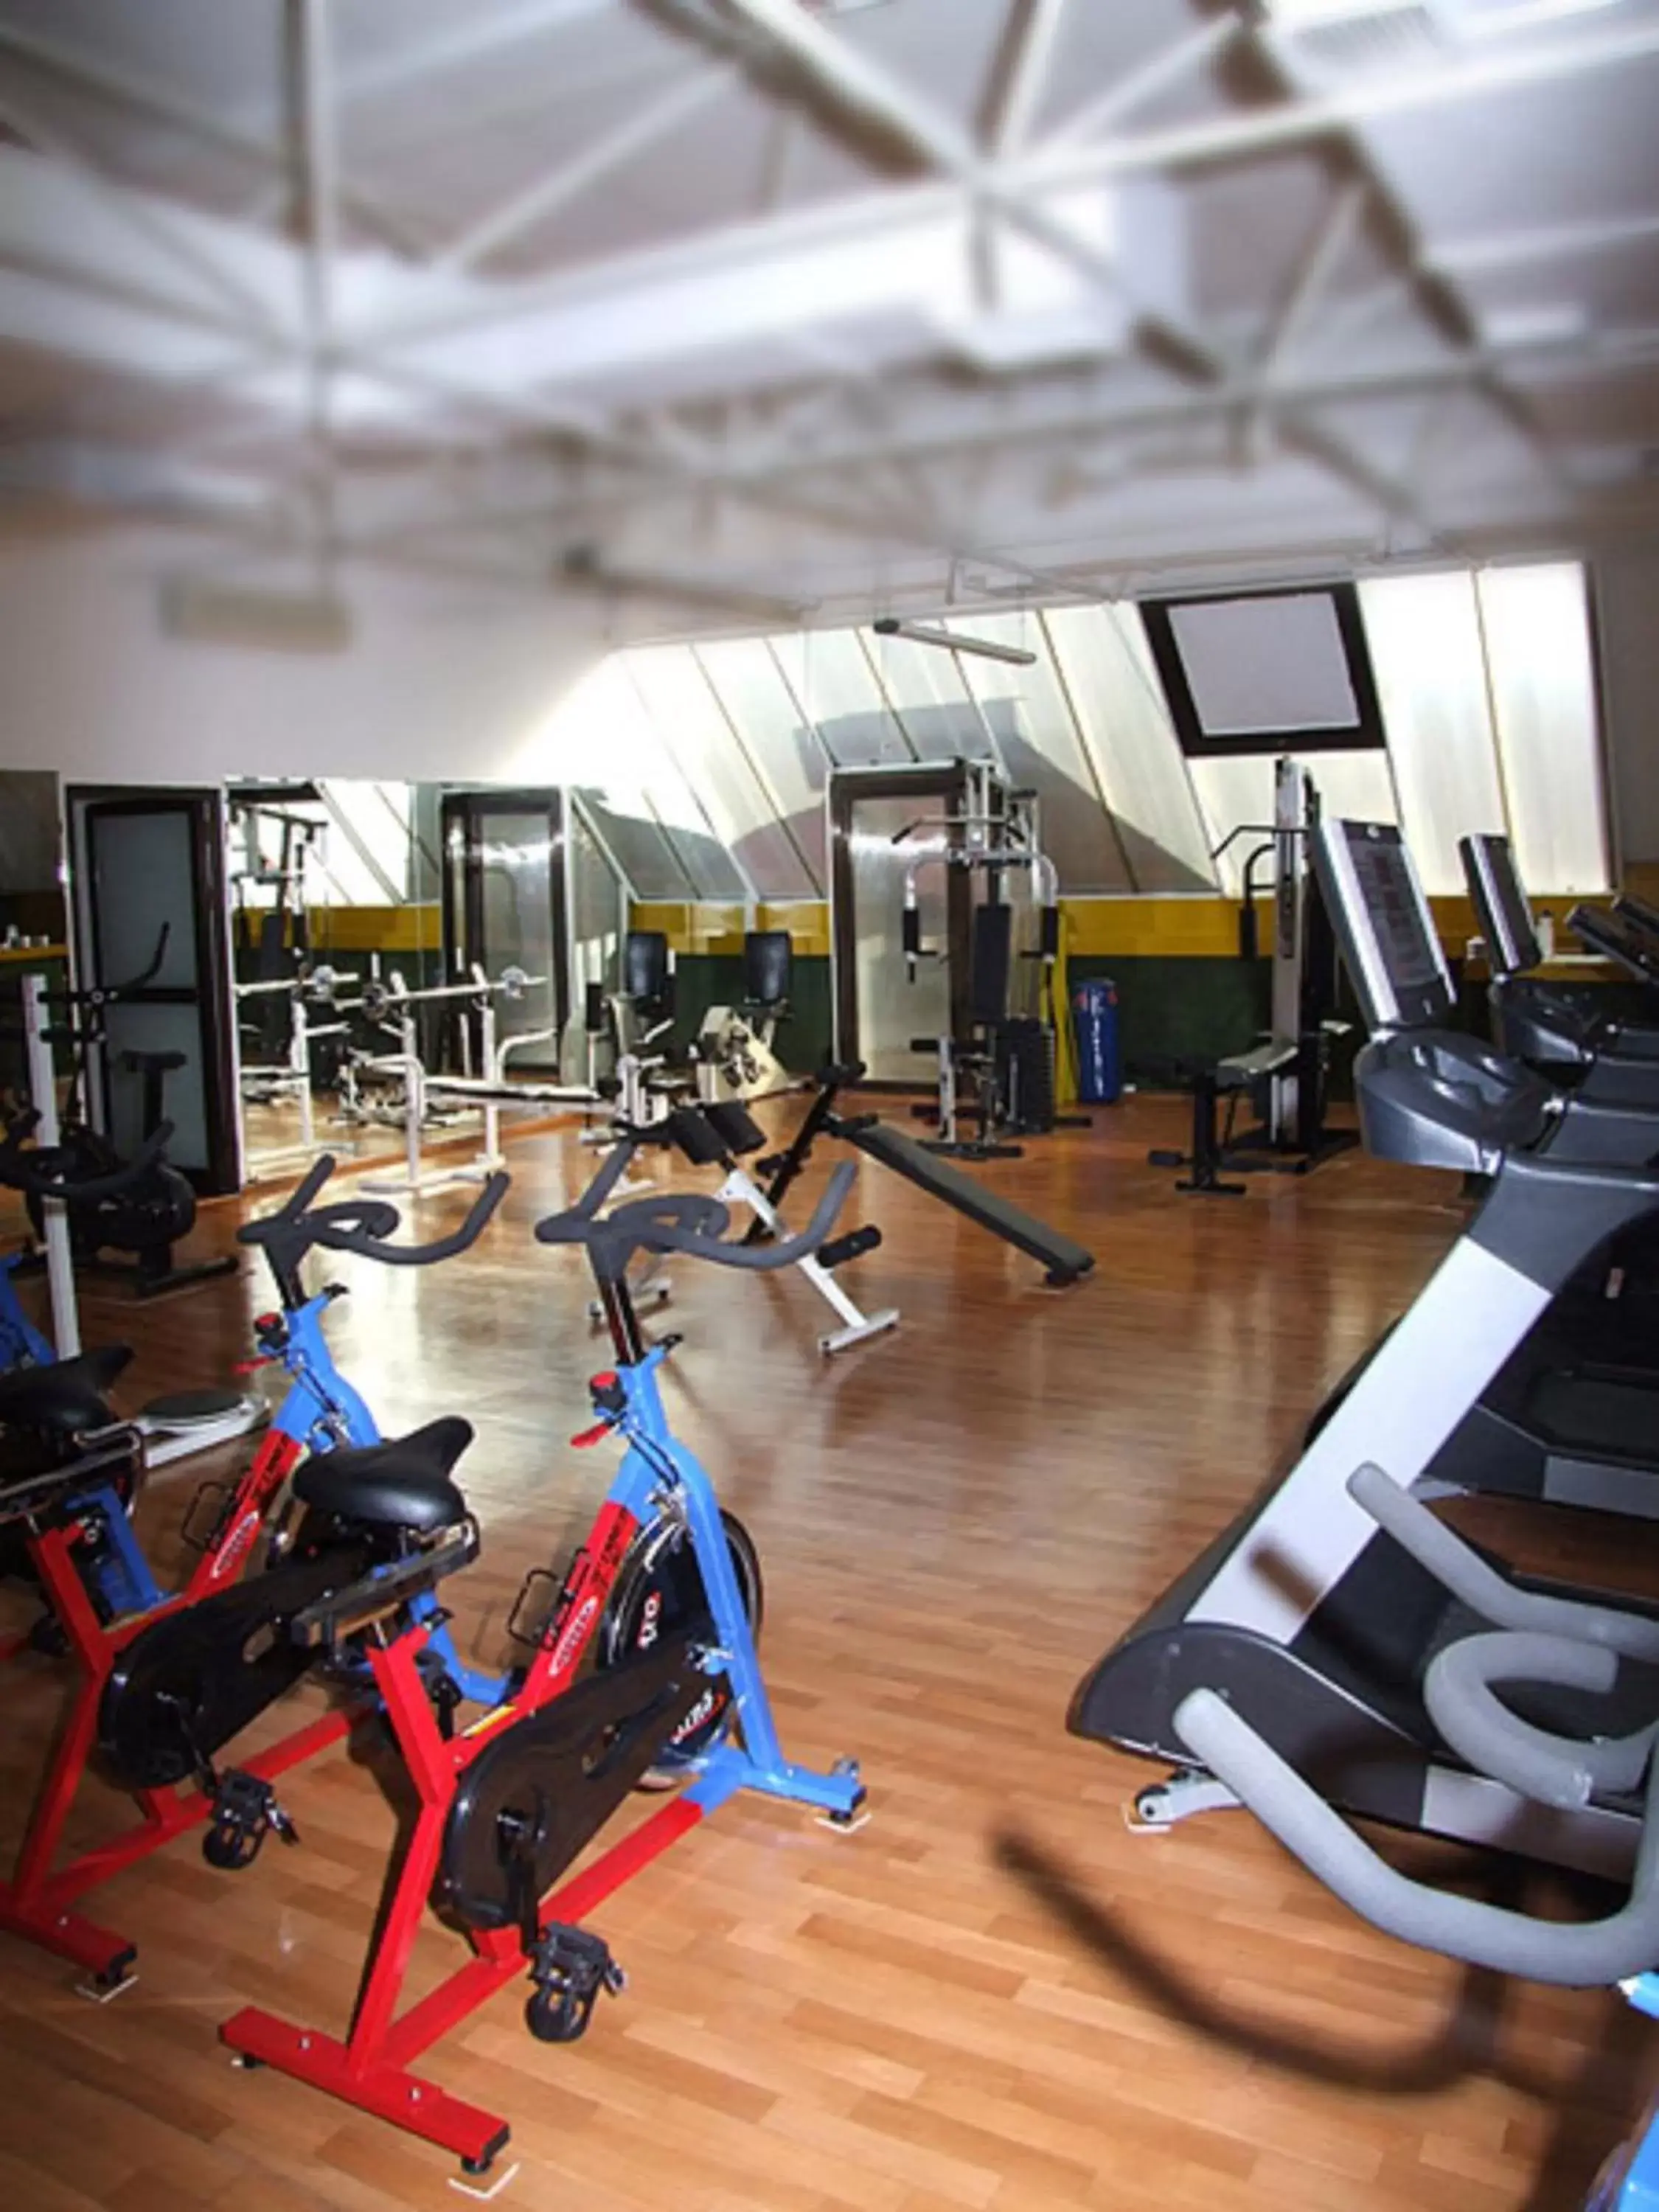 Fitness centre/facilities, Fitness Center/Facilities in Güneş Hotel Merter